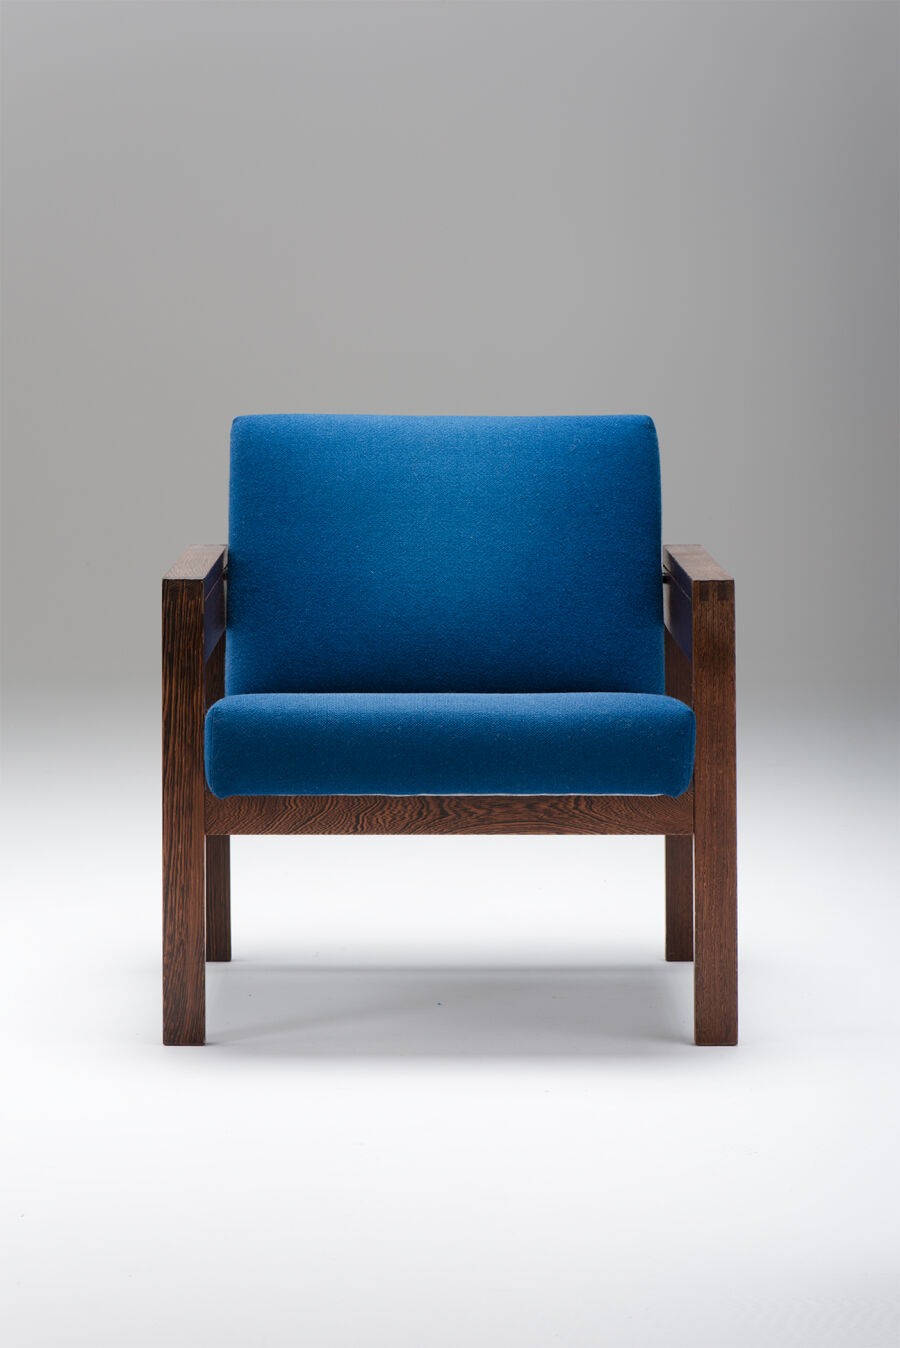 blauwe-chairs3RJDh